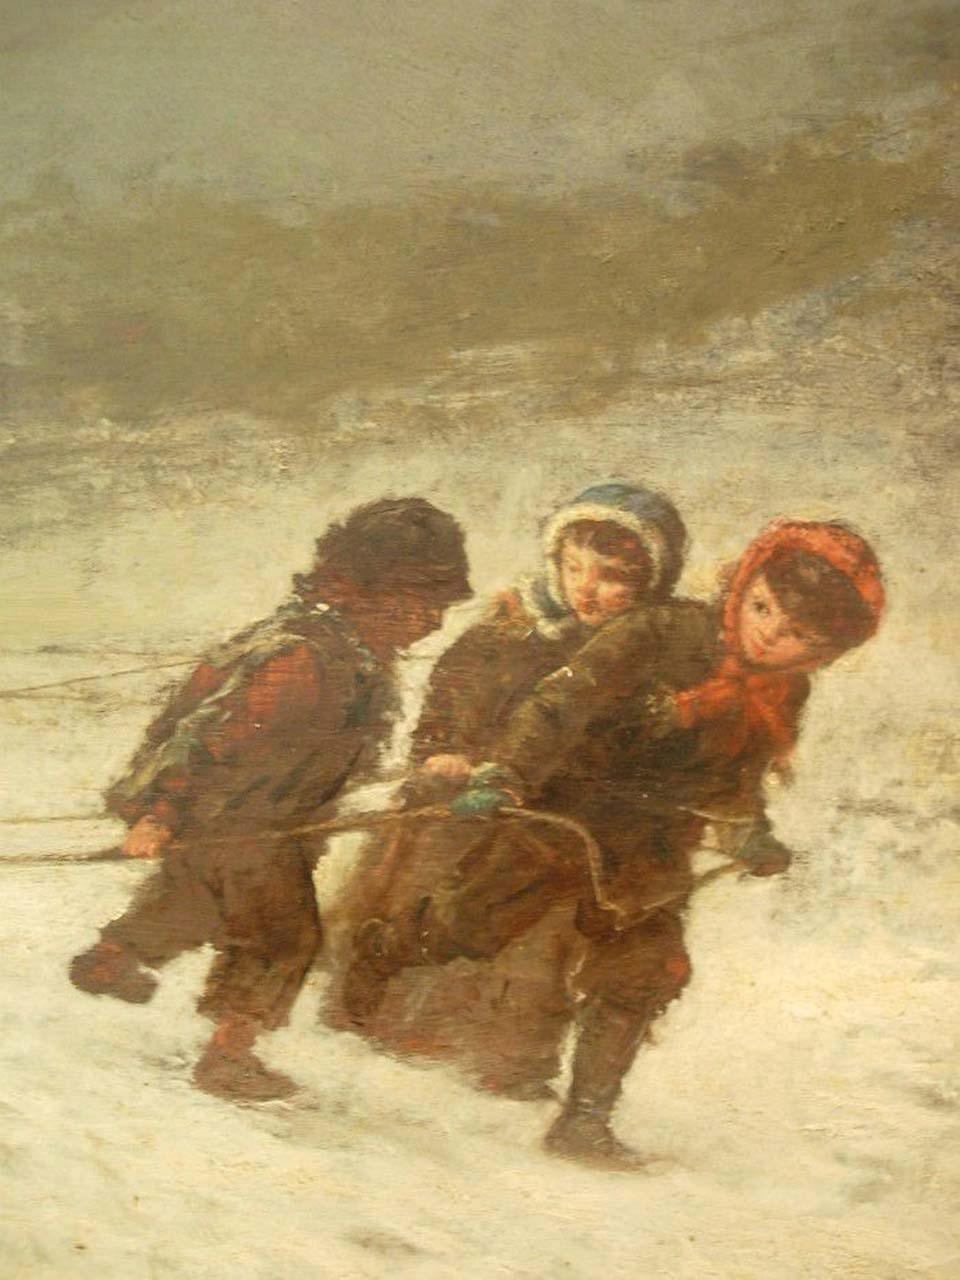 Winter scene with children sledding - 2